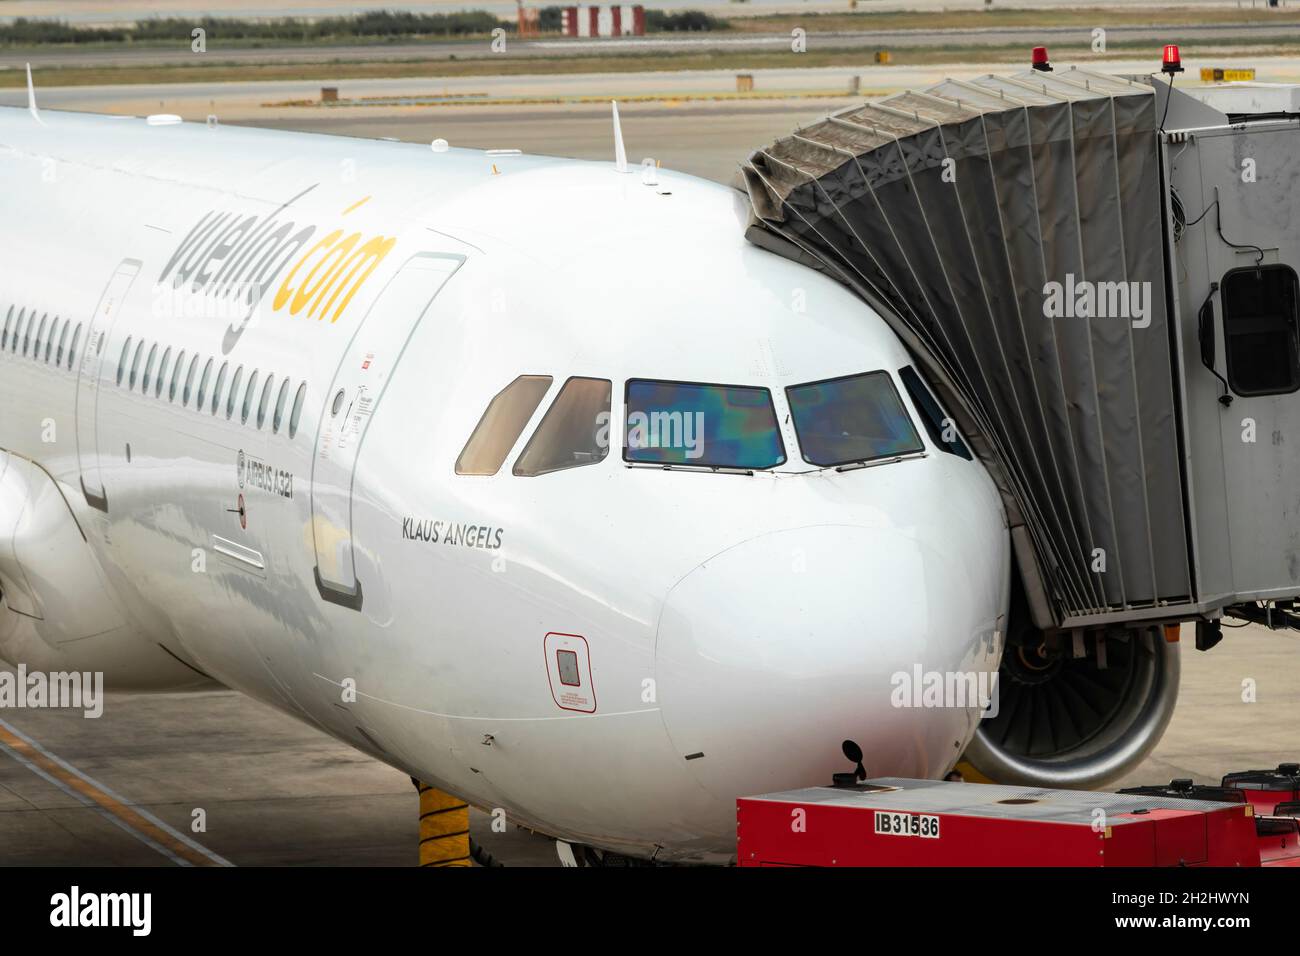 Barcelone, Espagne - 24 septembre 2021 : Airbus A321 de la société Vueling avec le gangway d'accès à l'avion « finger » fixé, préparant le décollage Banque D'Images